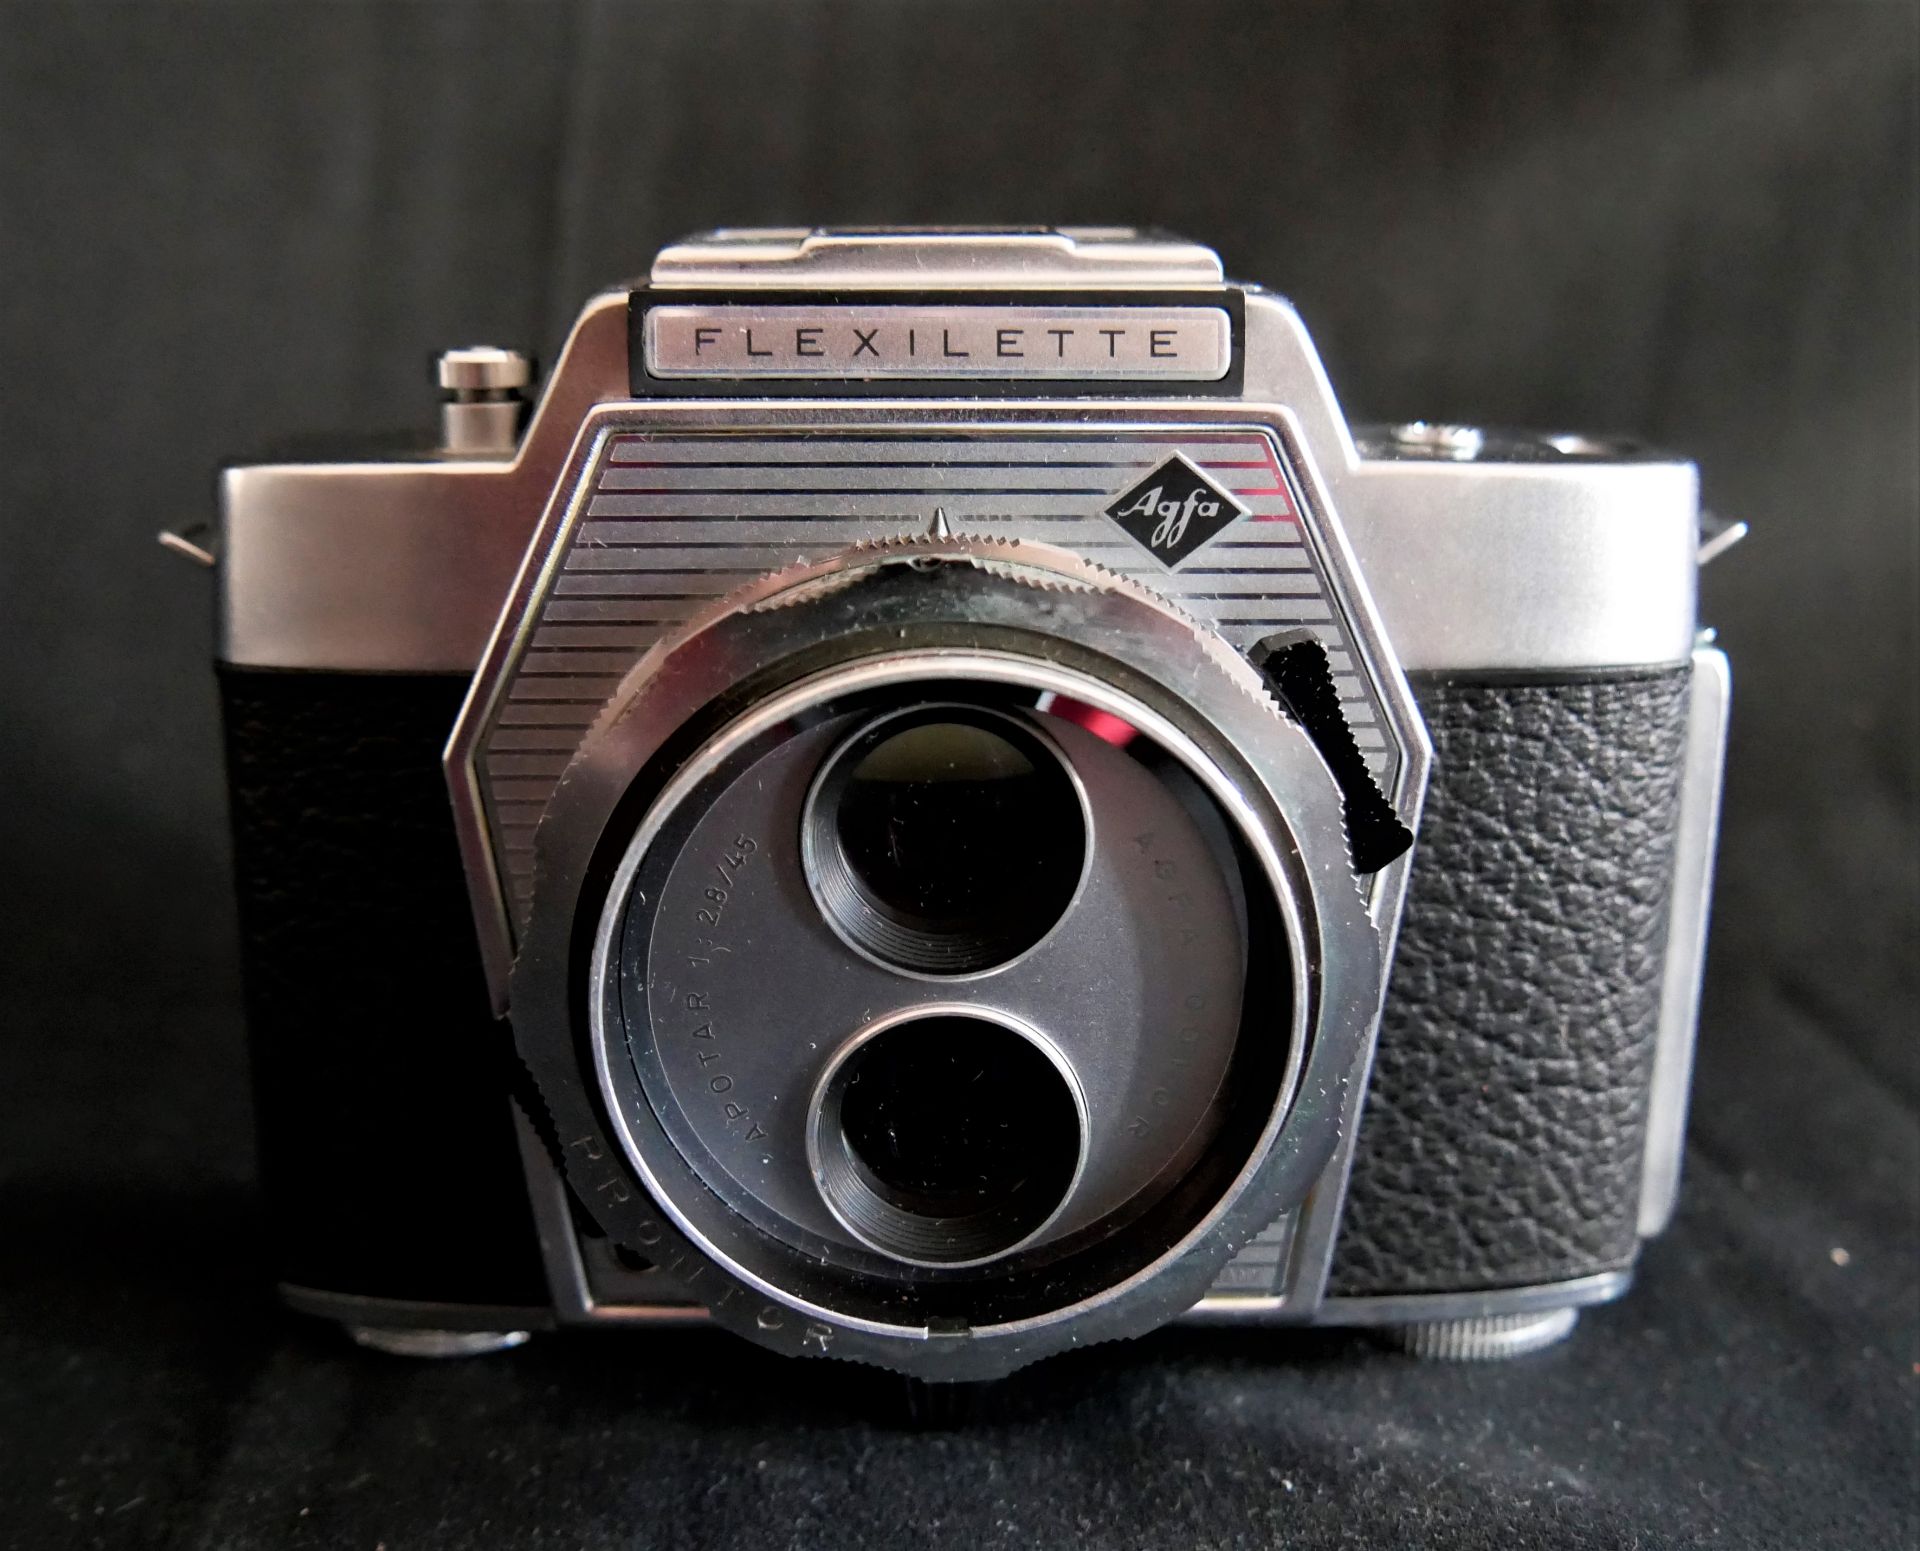 1 KameraAGfa Flexelette mit Objektiv Agfa Color Apotar 2,8/45, 2-äugige Kamera, guter Zustand